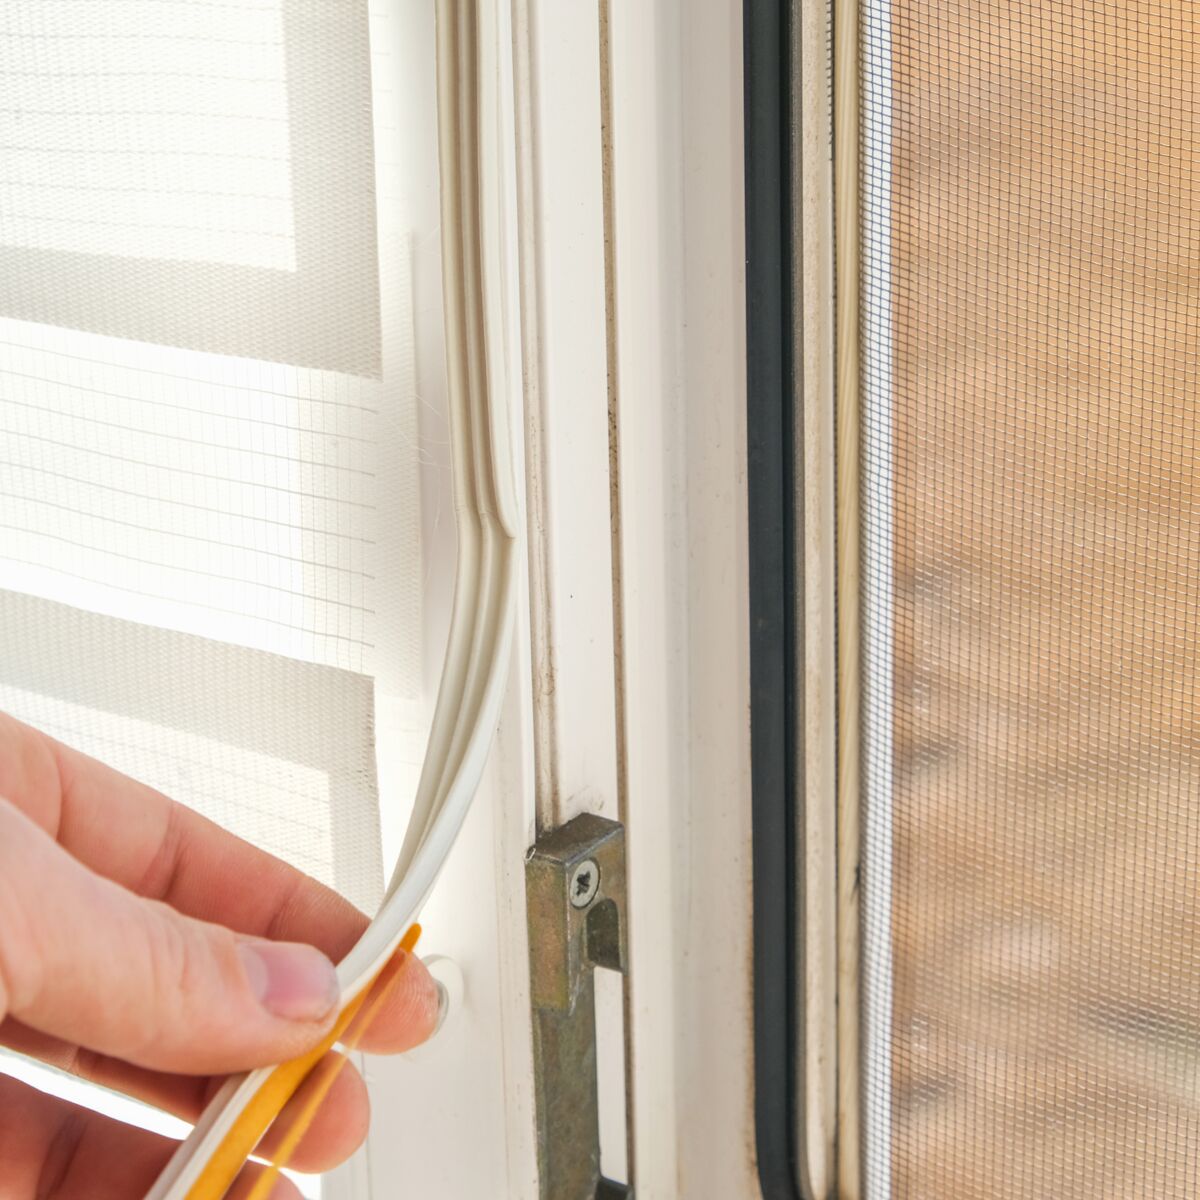 3 solutions pour améliorer l'isolation phonique d'une fenêtre